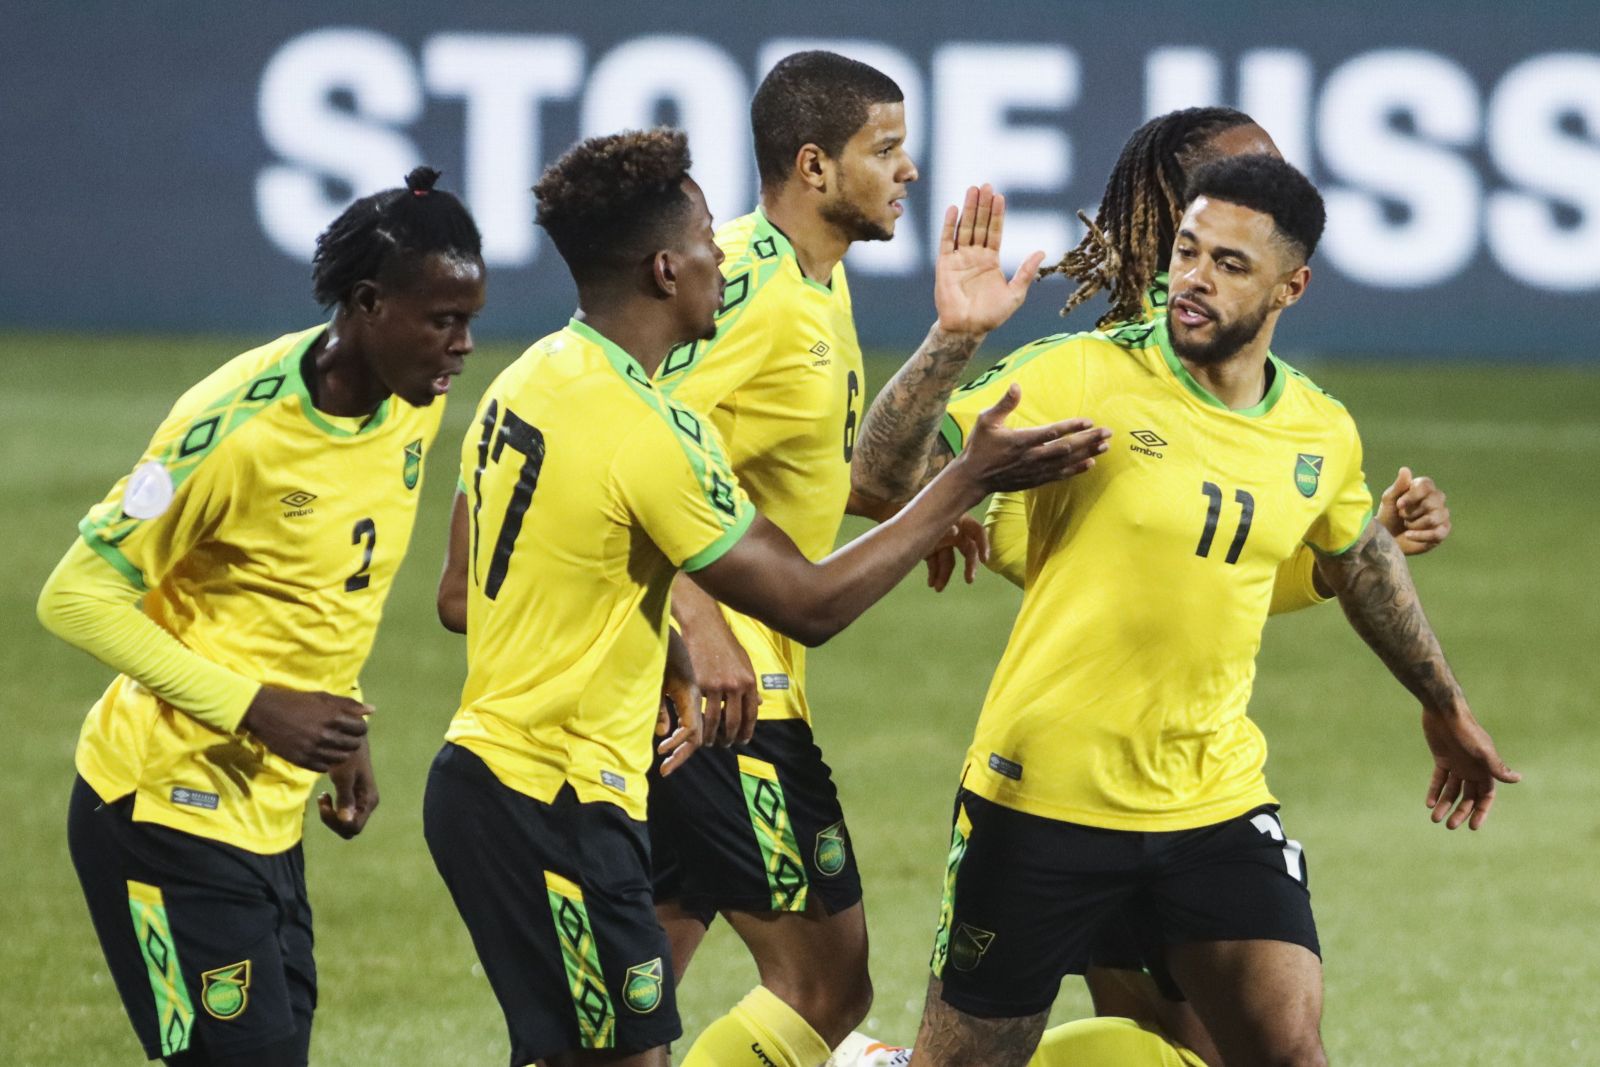 Ở đầu trận khả năng kèo thẻ vàng giữa Suriname vs Costa Rica sẽ nổ tài